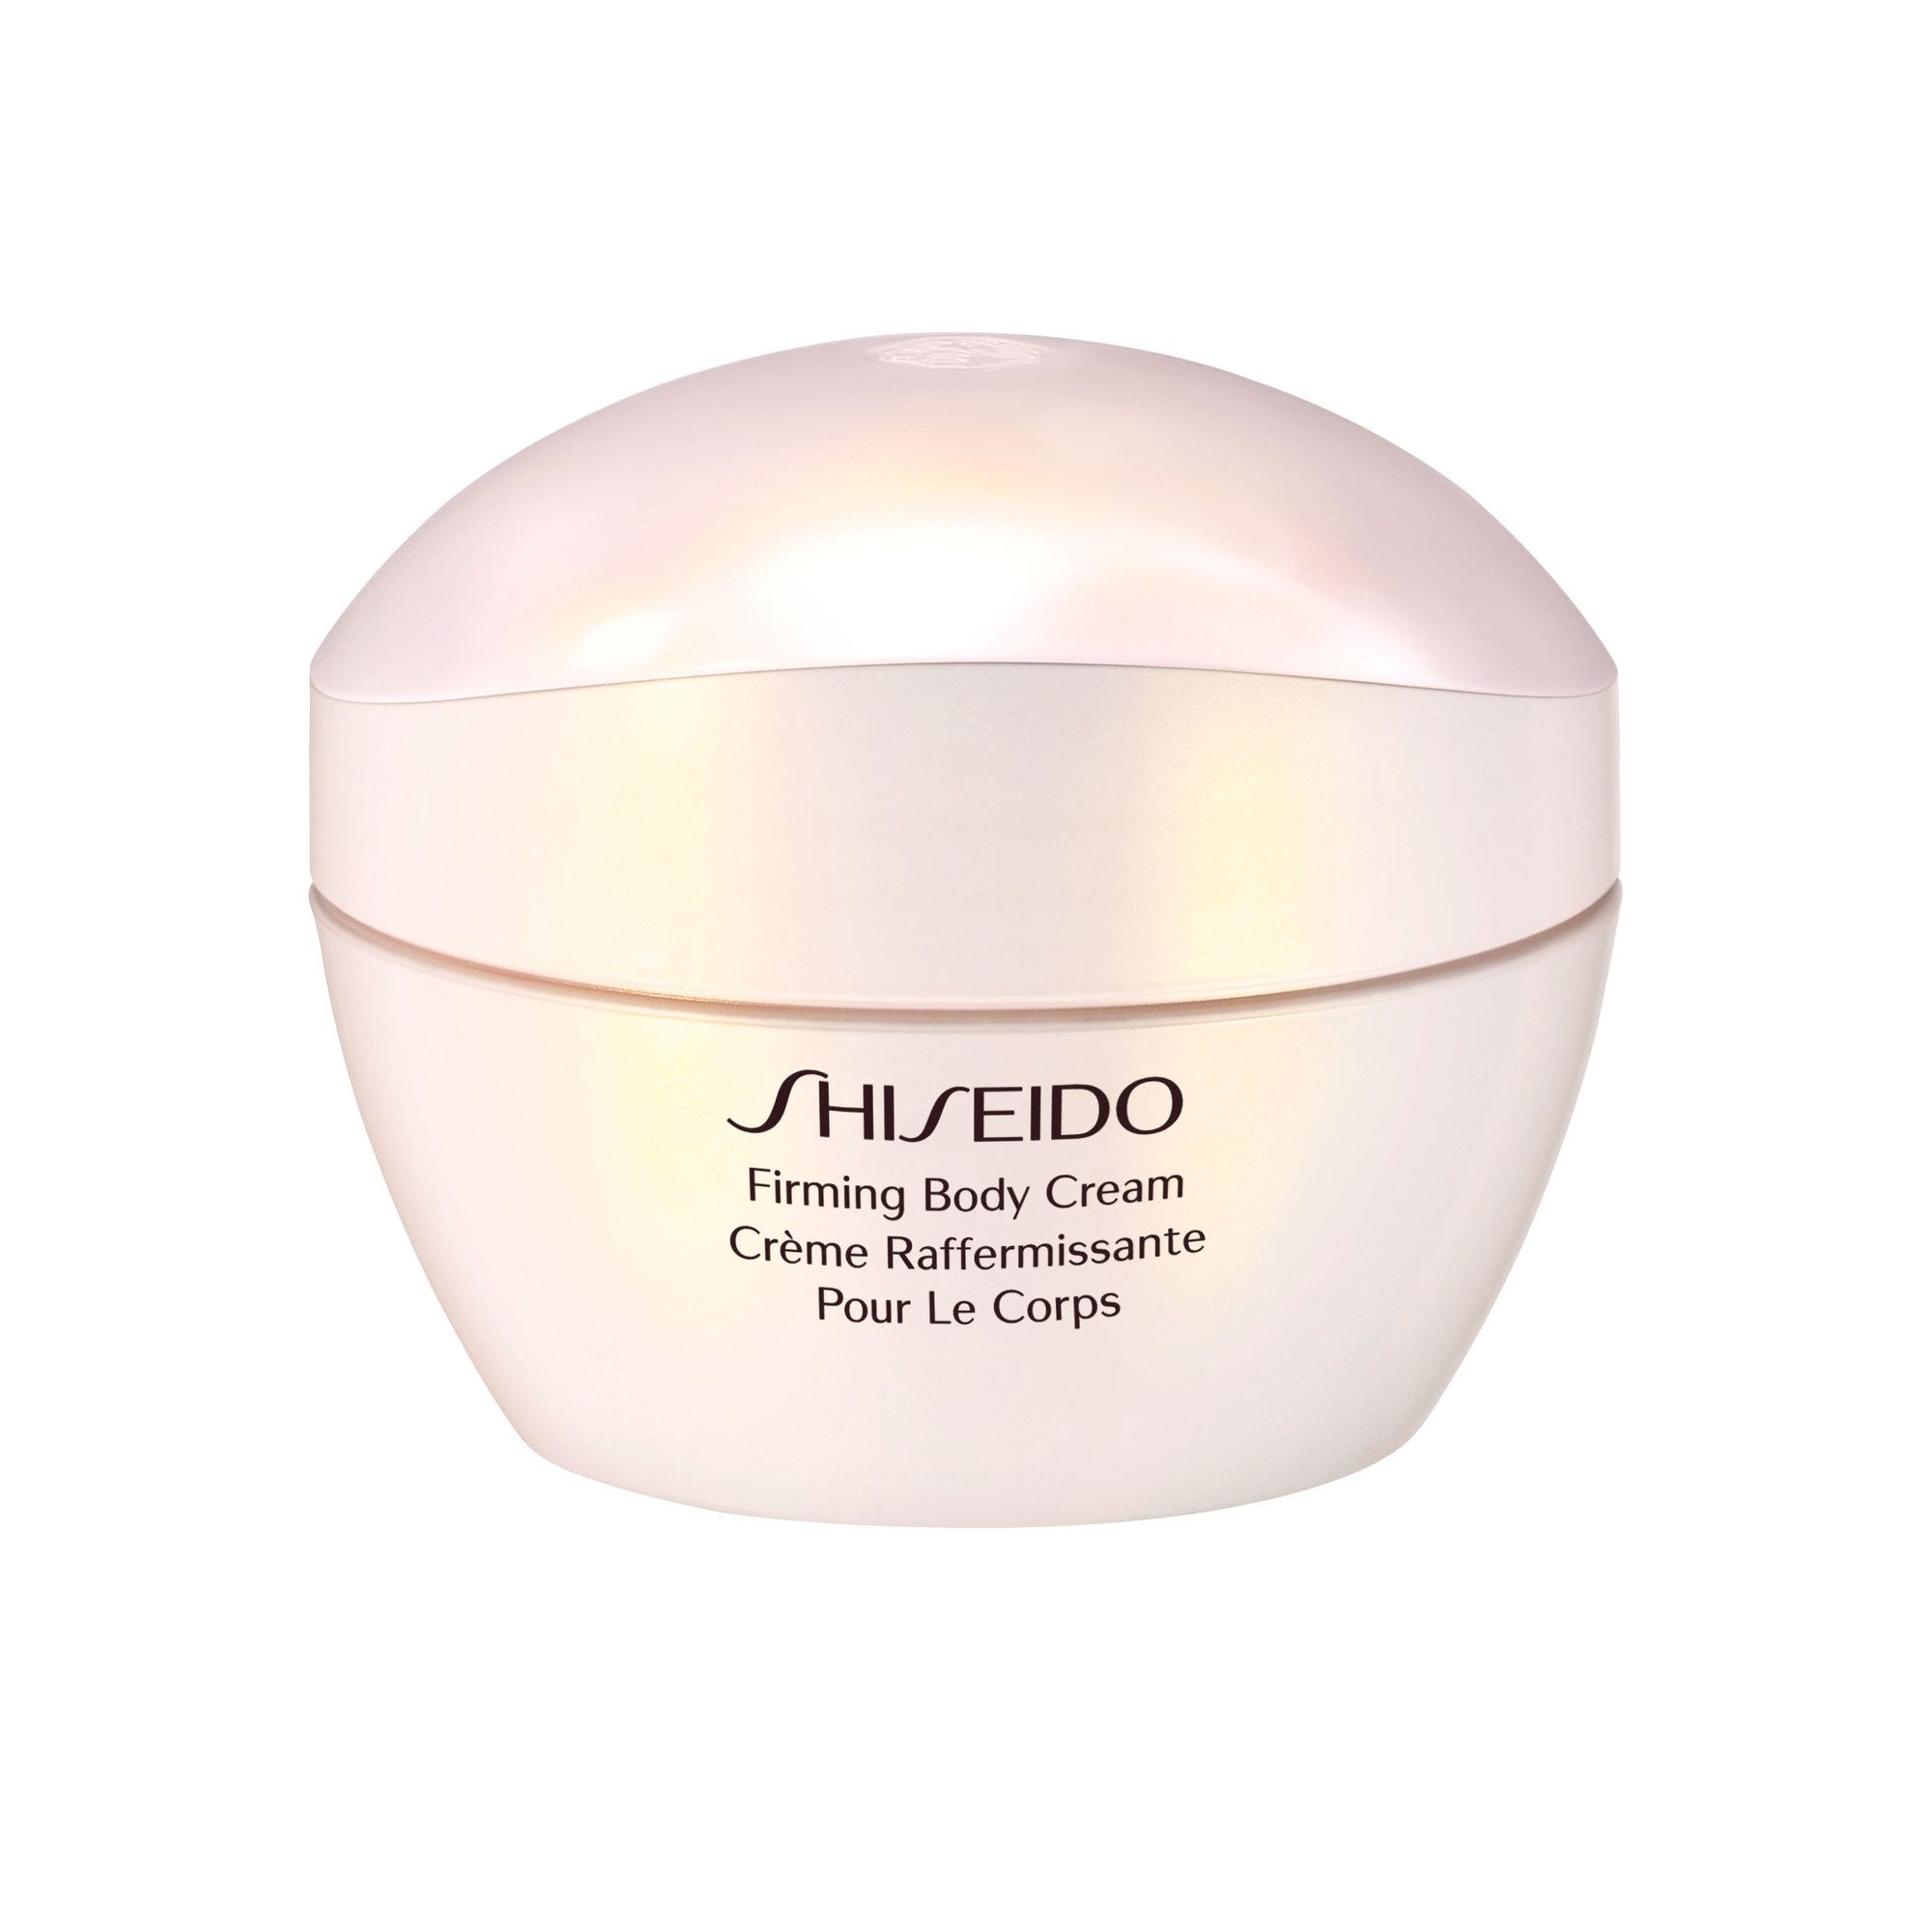 Image of Trattamento corpo Shiseido Firming Body Cream 200 ml